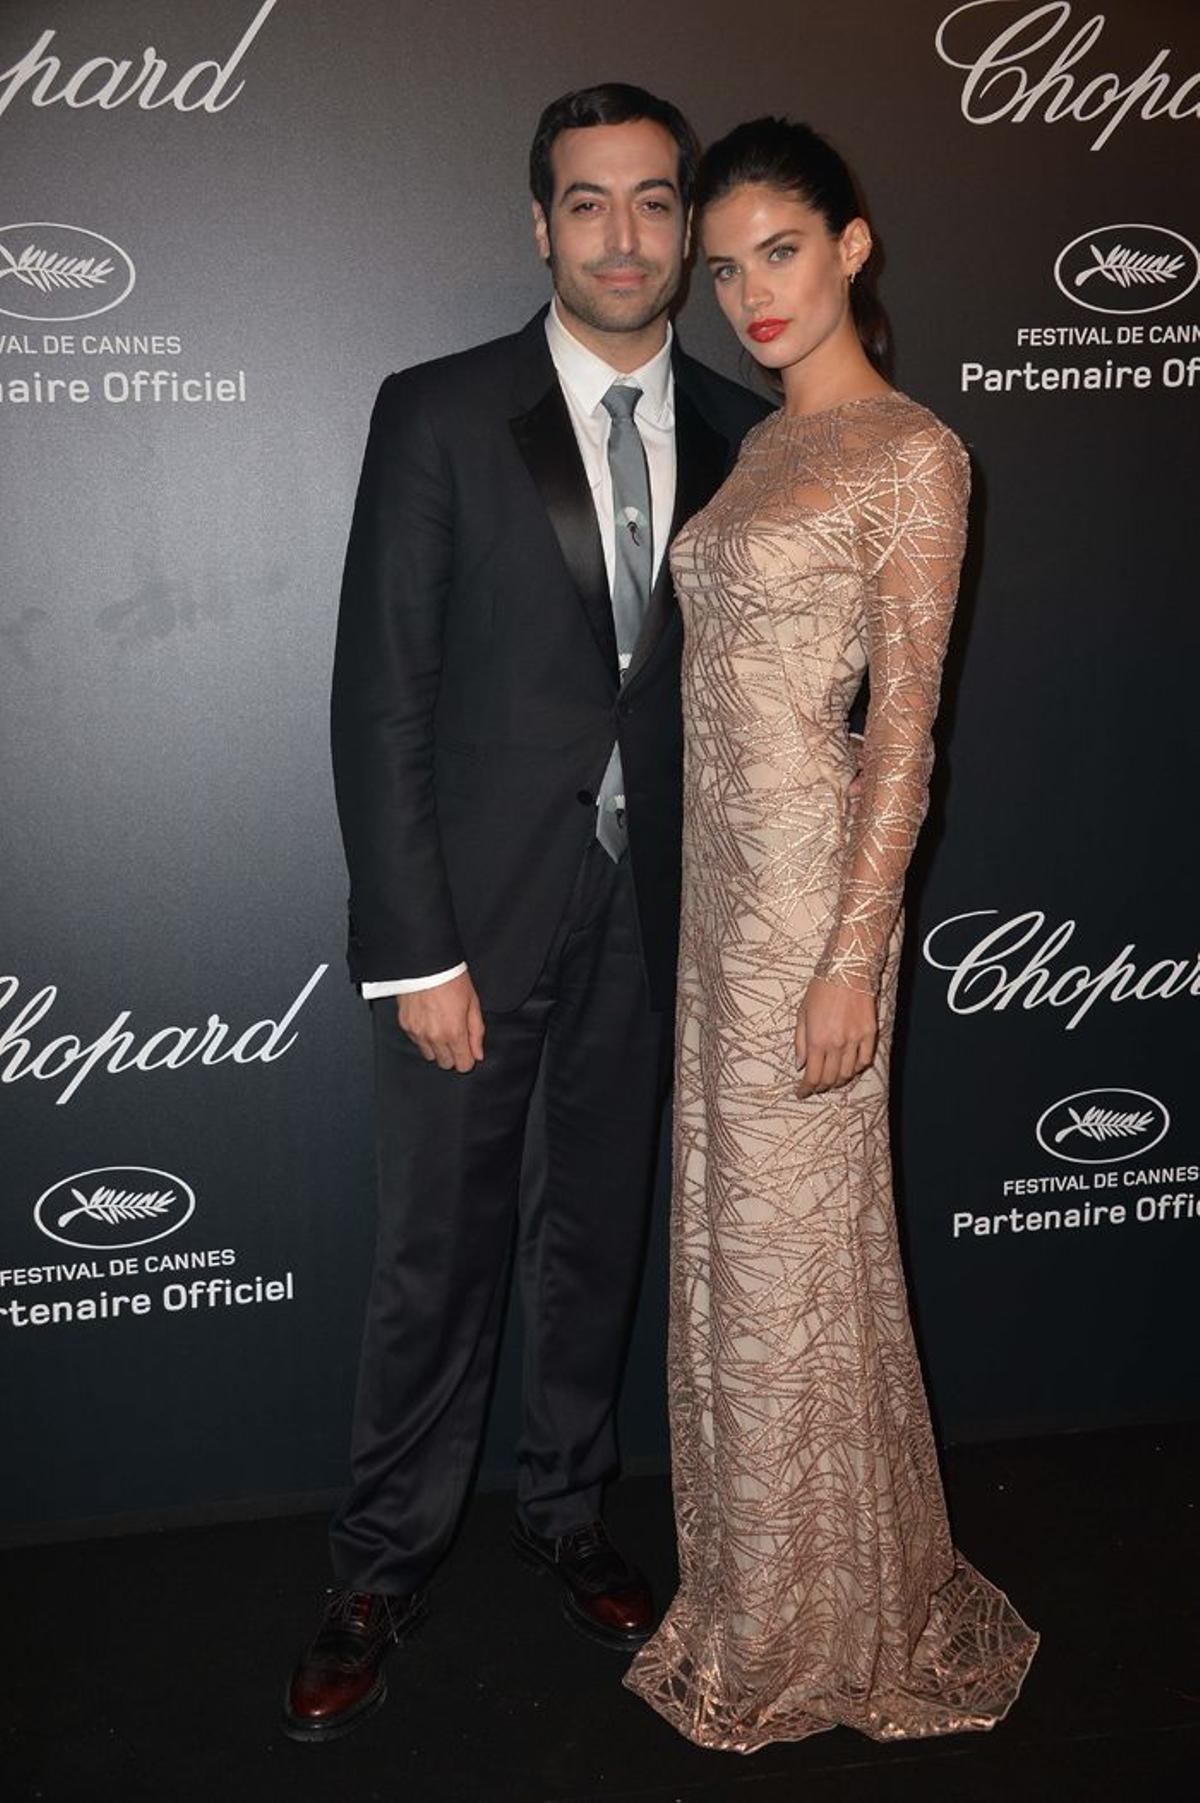 Sara Sampaio en la fiesta de Chopard en Cannes 2015